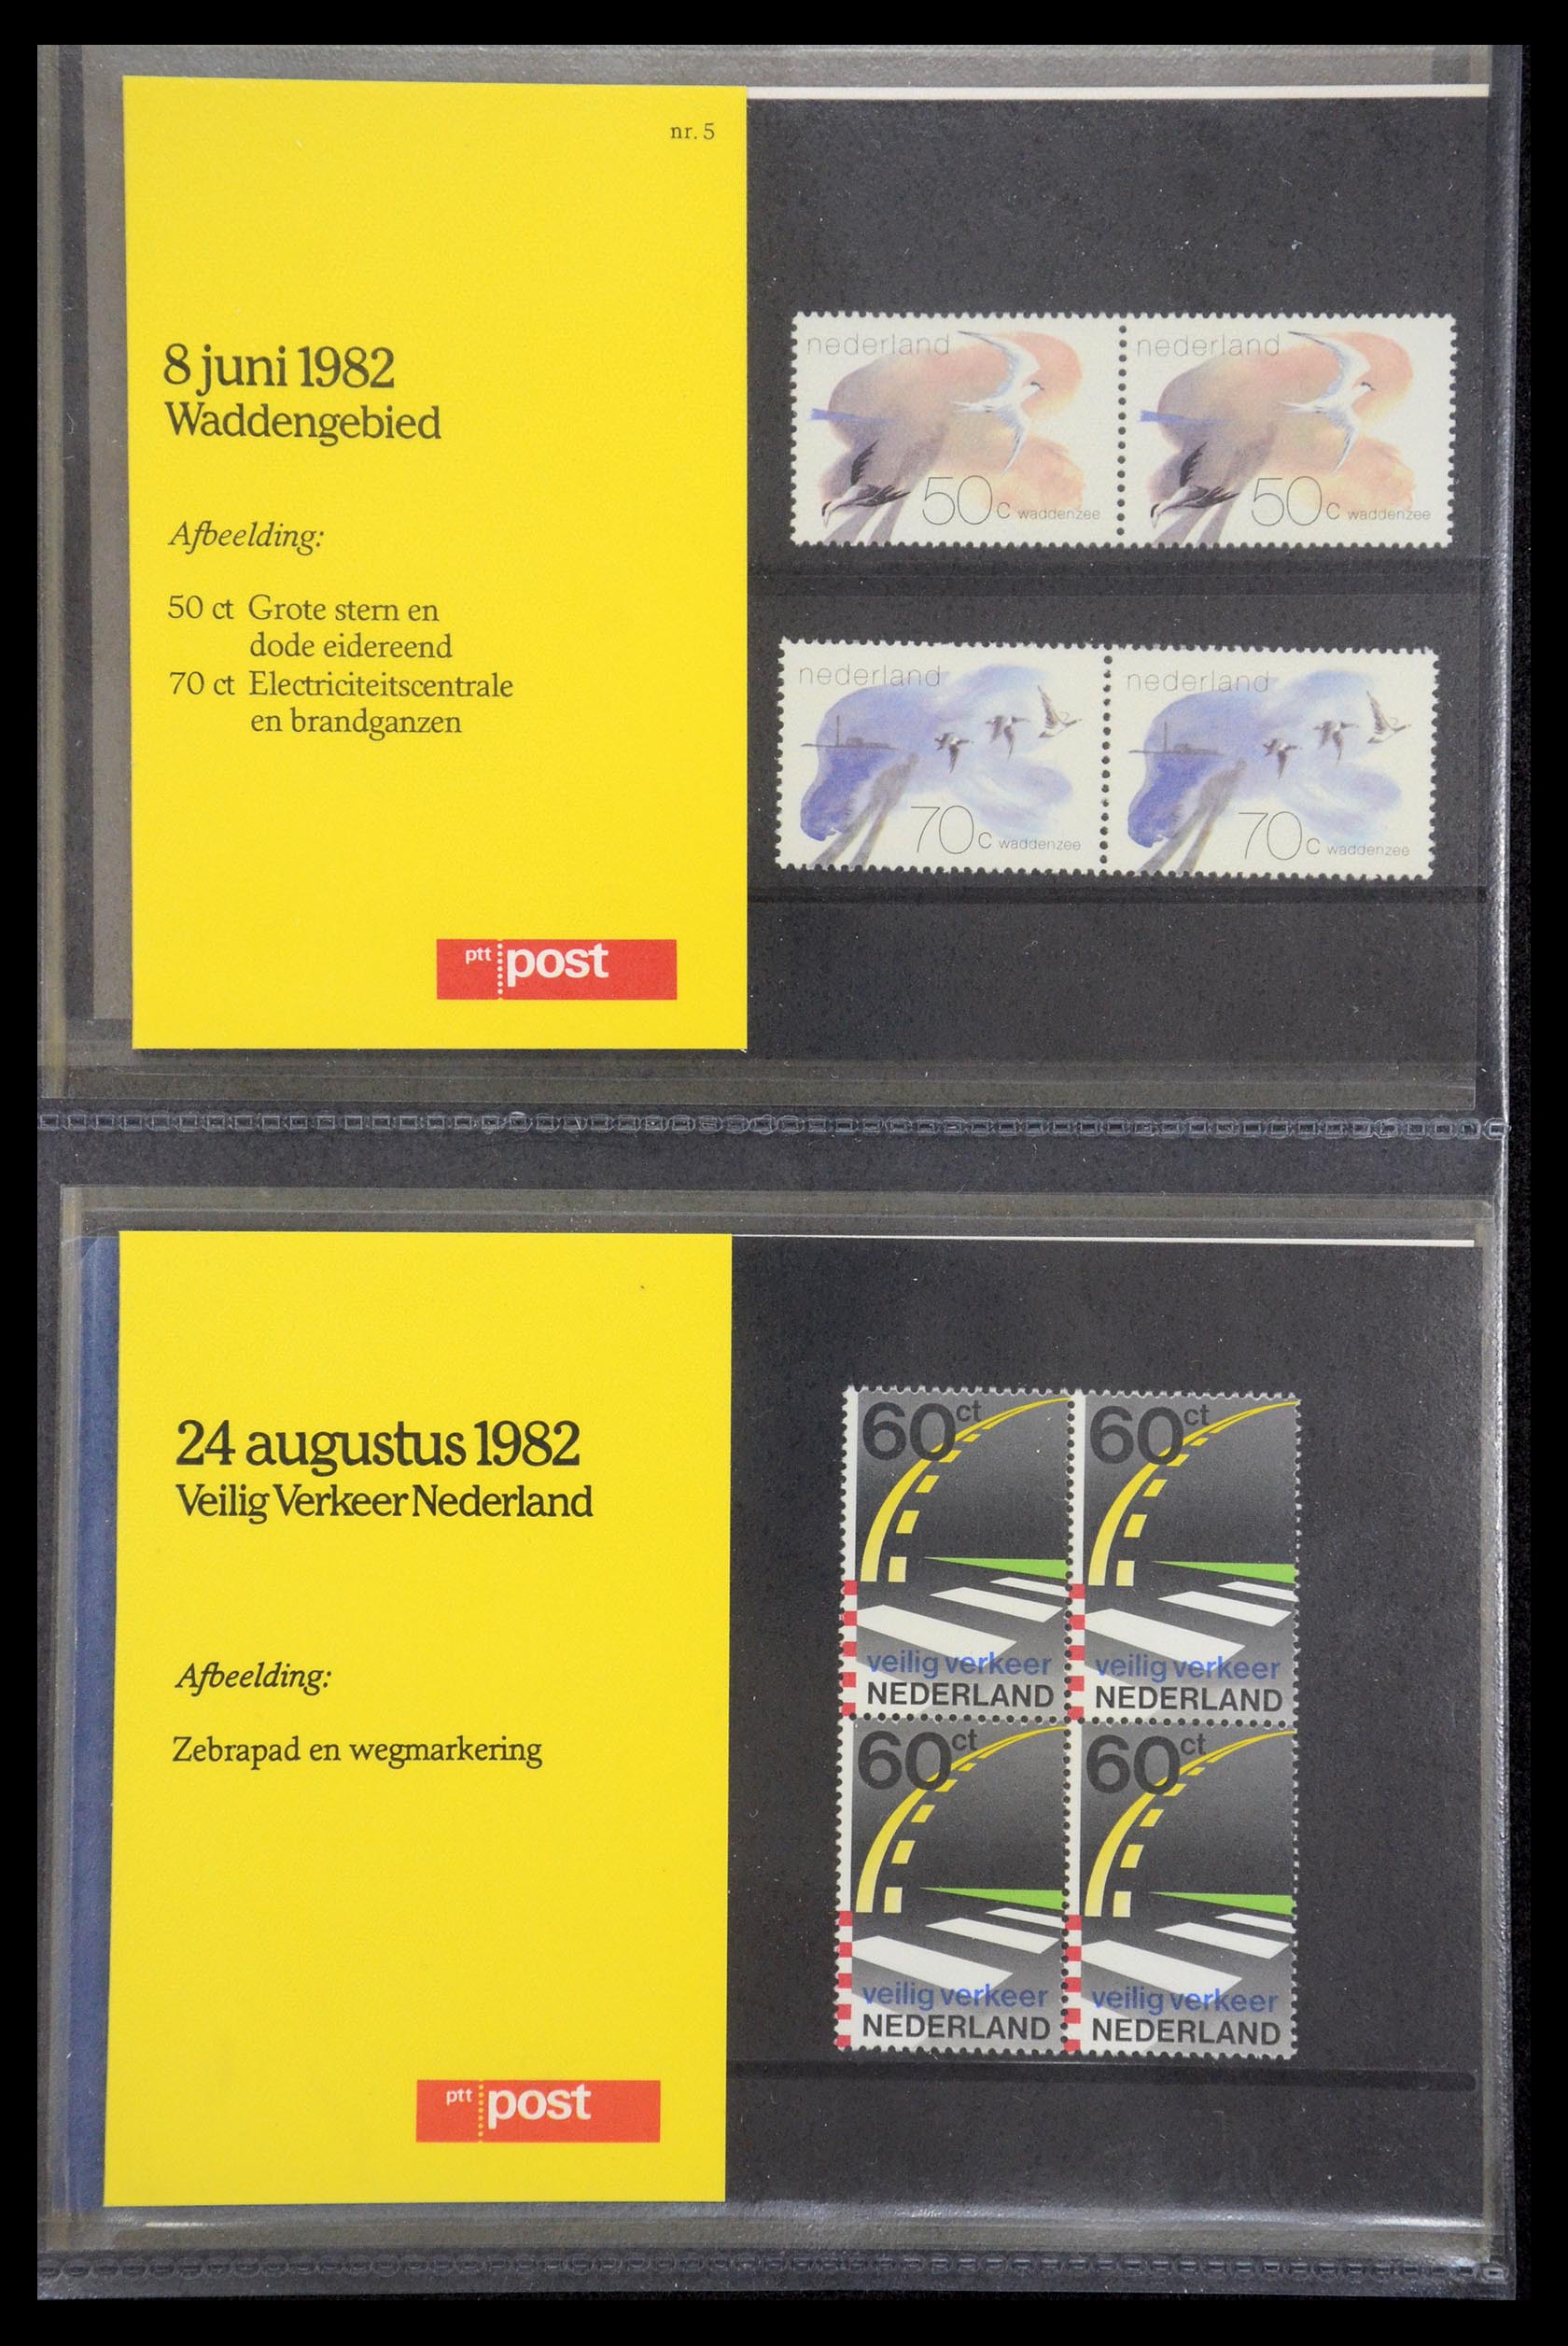 35187 003 - Stamp Collection 35187 Netherlands PTT presentation packs 1982-2019!